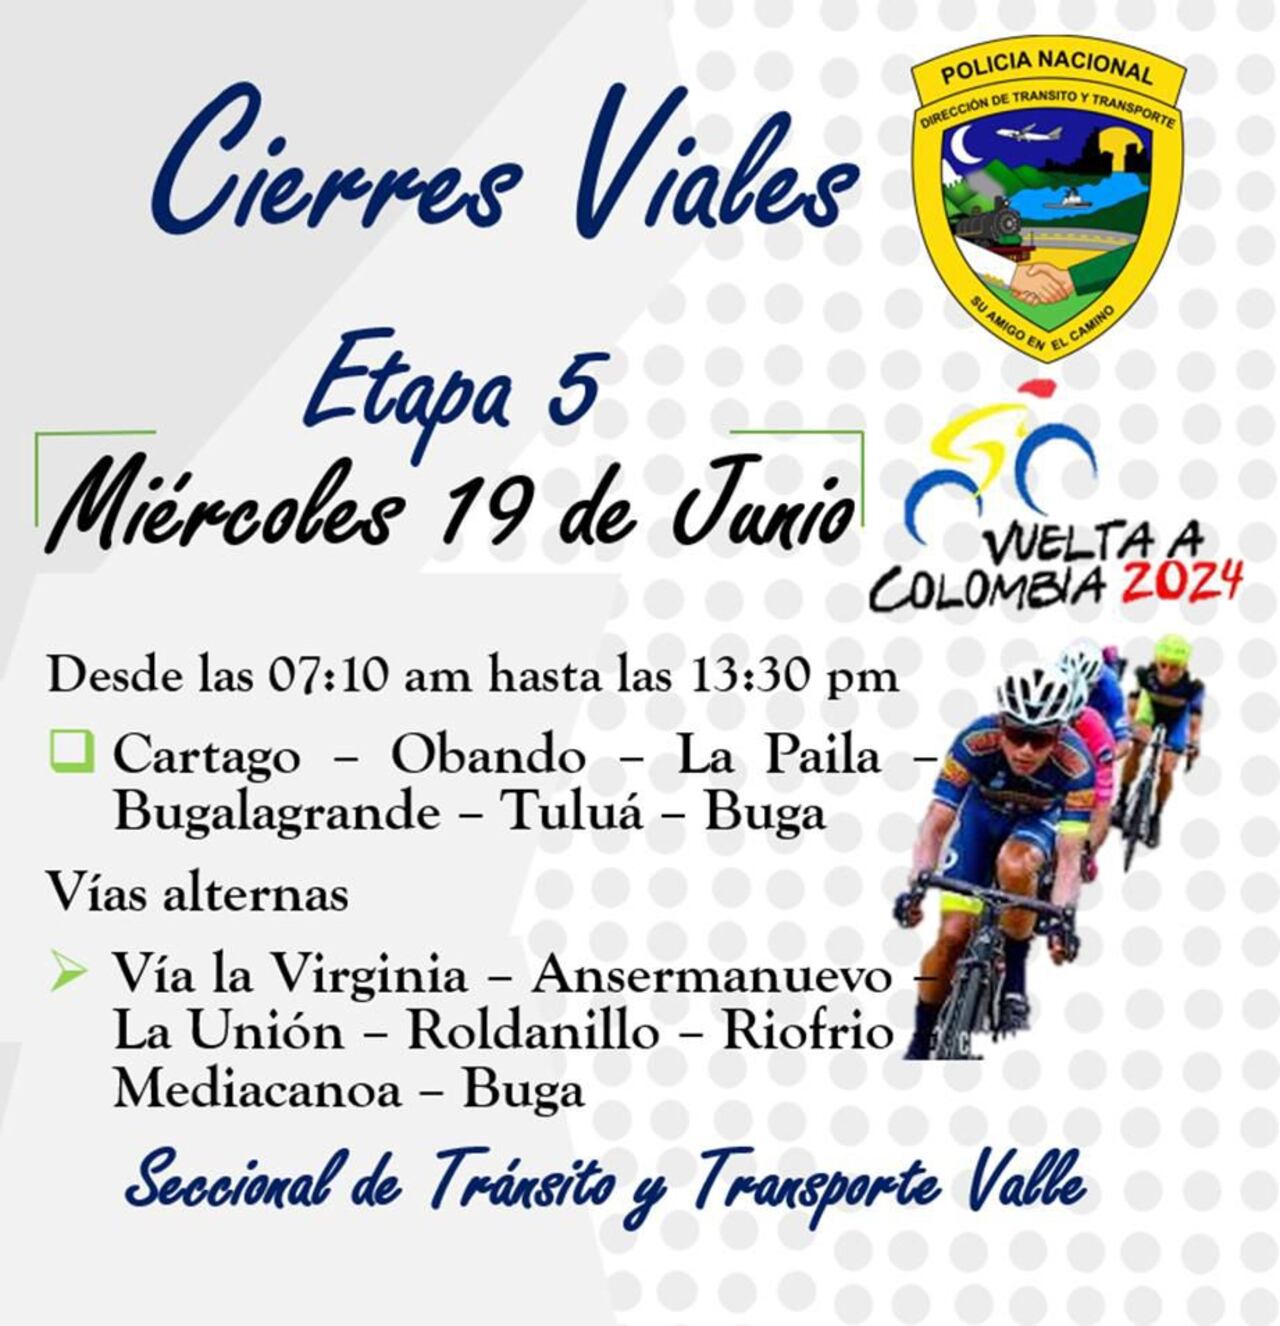 La secretaría seccional de Tránsito y Transporte Valle anunció que habrán cierres viales por la etapa 5 de la Vuelta a Colombia.